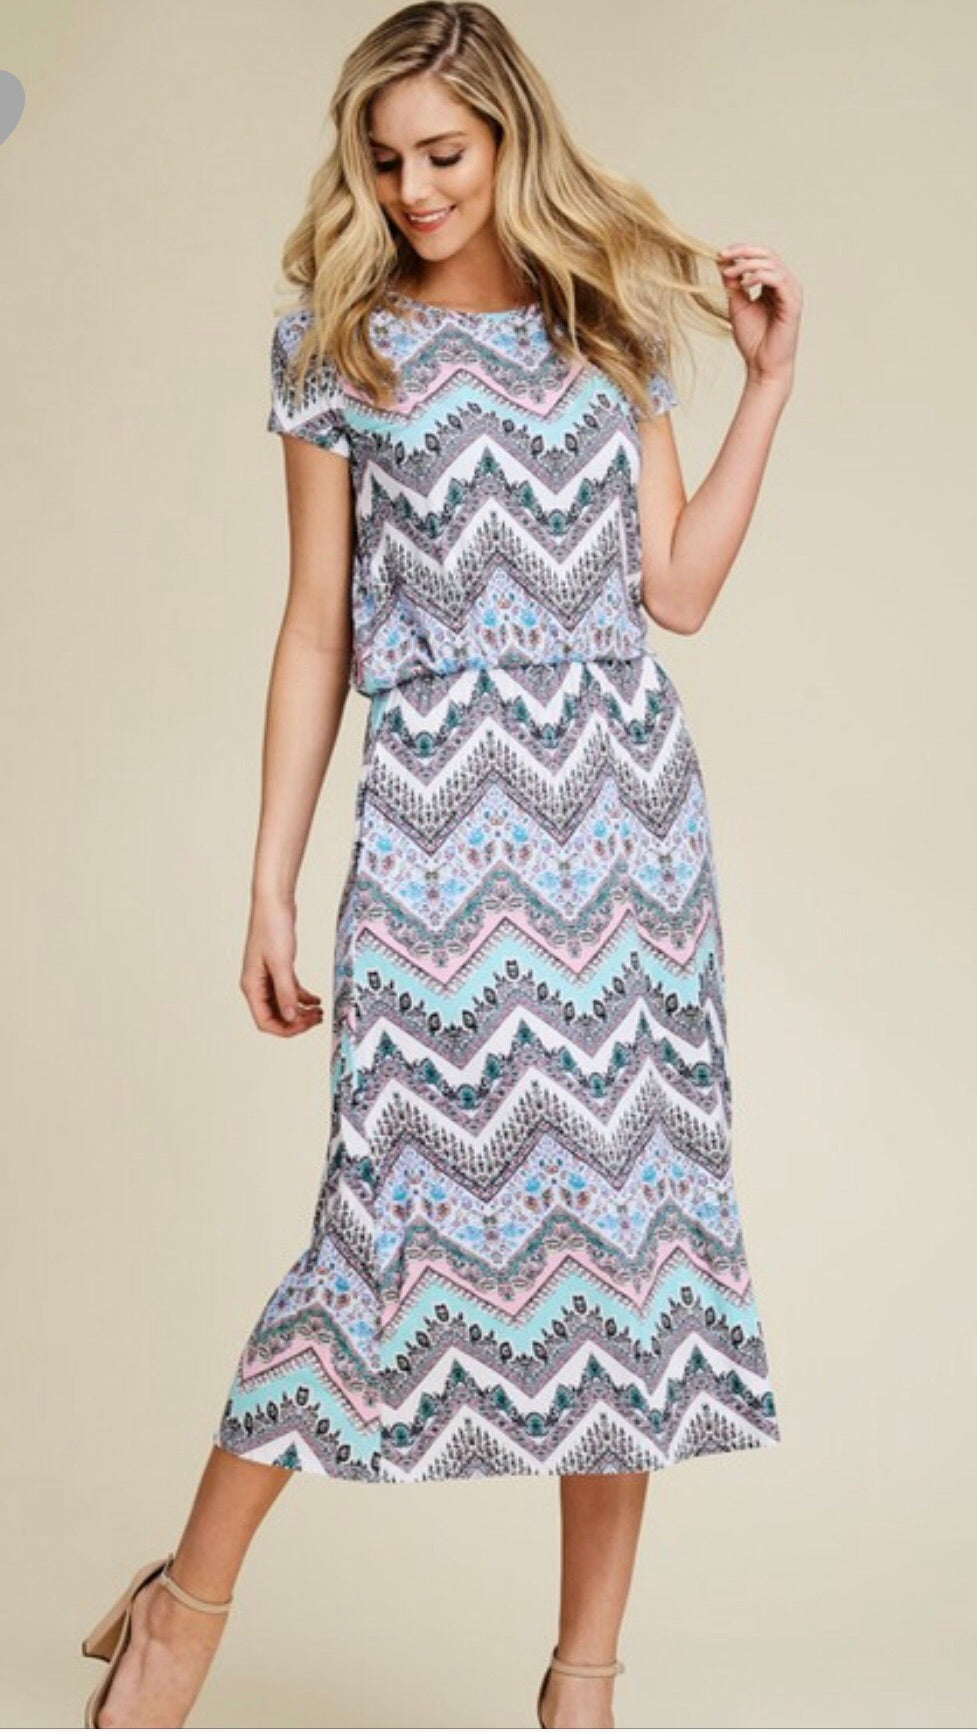 A Knit Bohemian Zigzag Print Dress